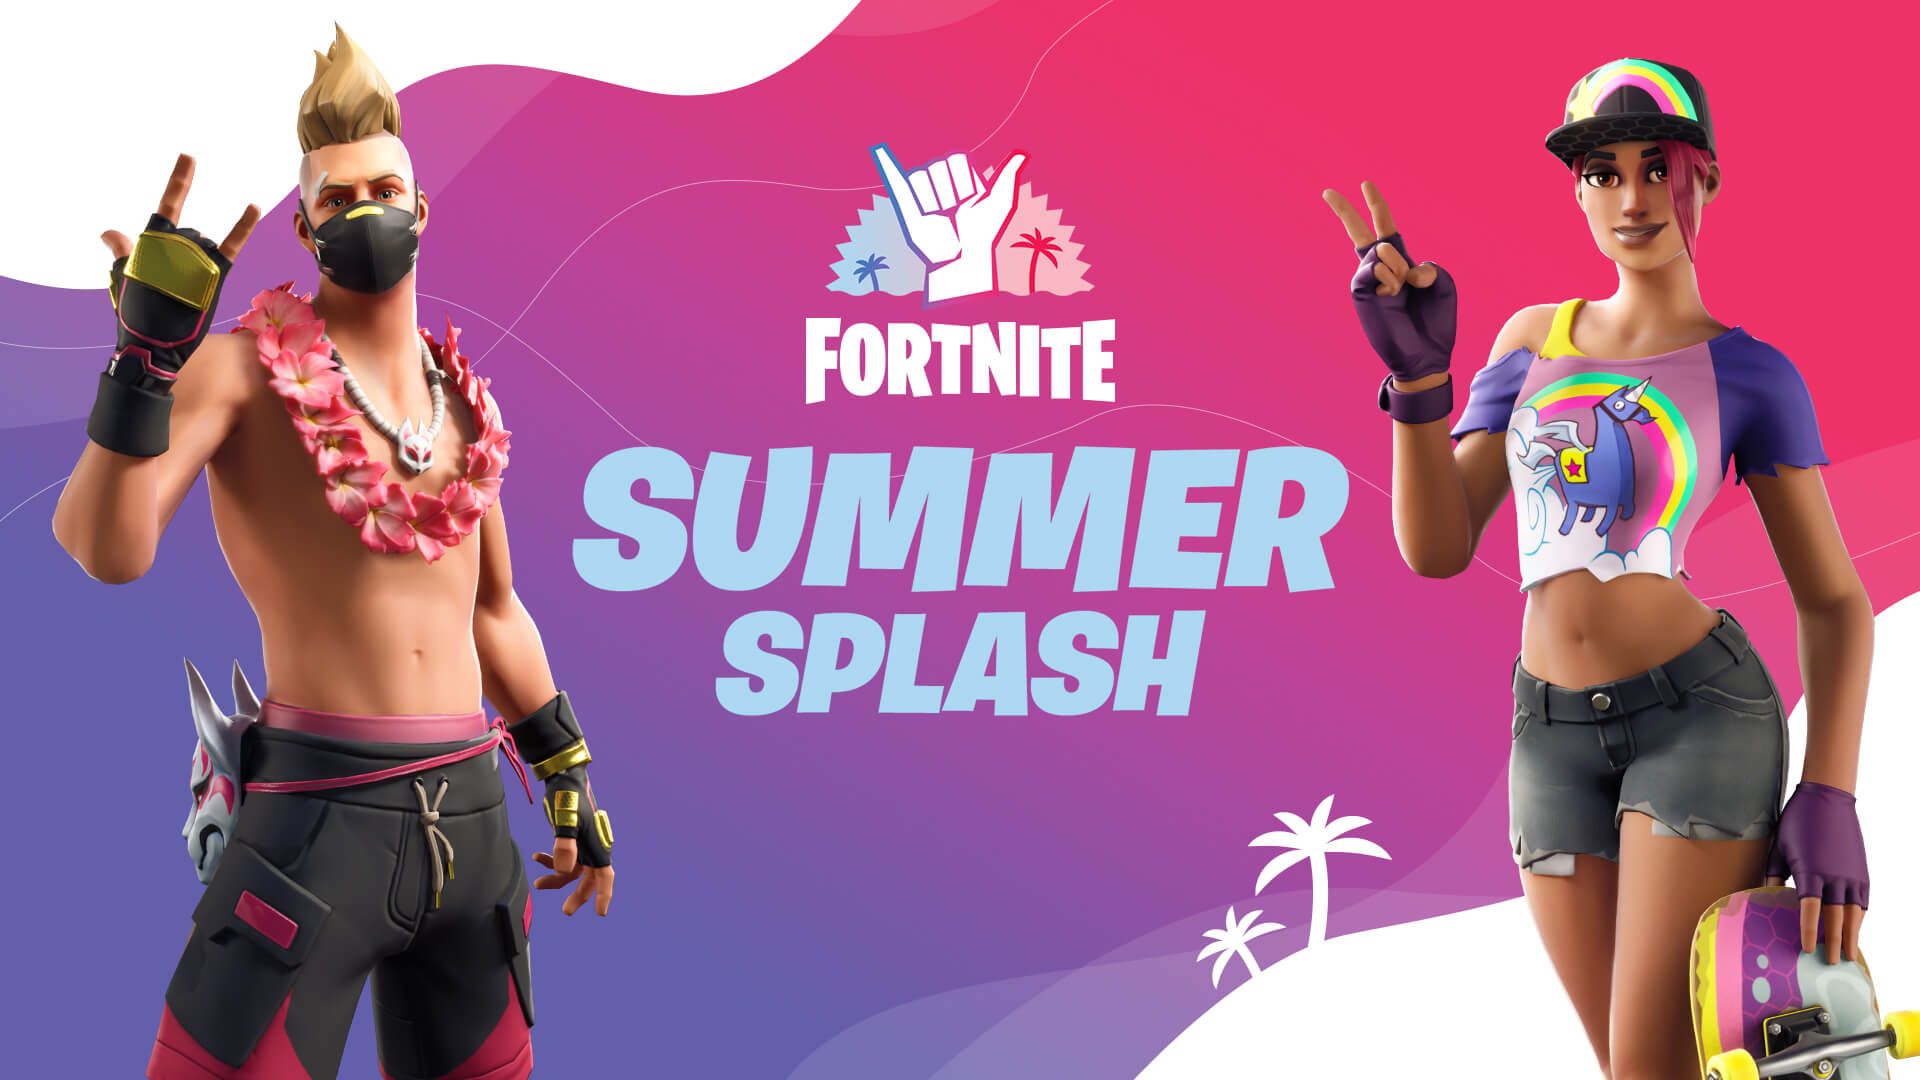 Fortnite Summer Splash 2020 rewards, challenges, skins and more. Tom's Guide